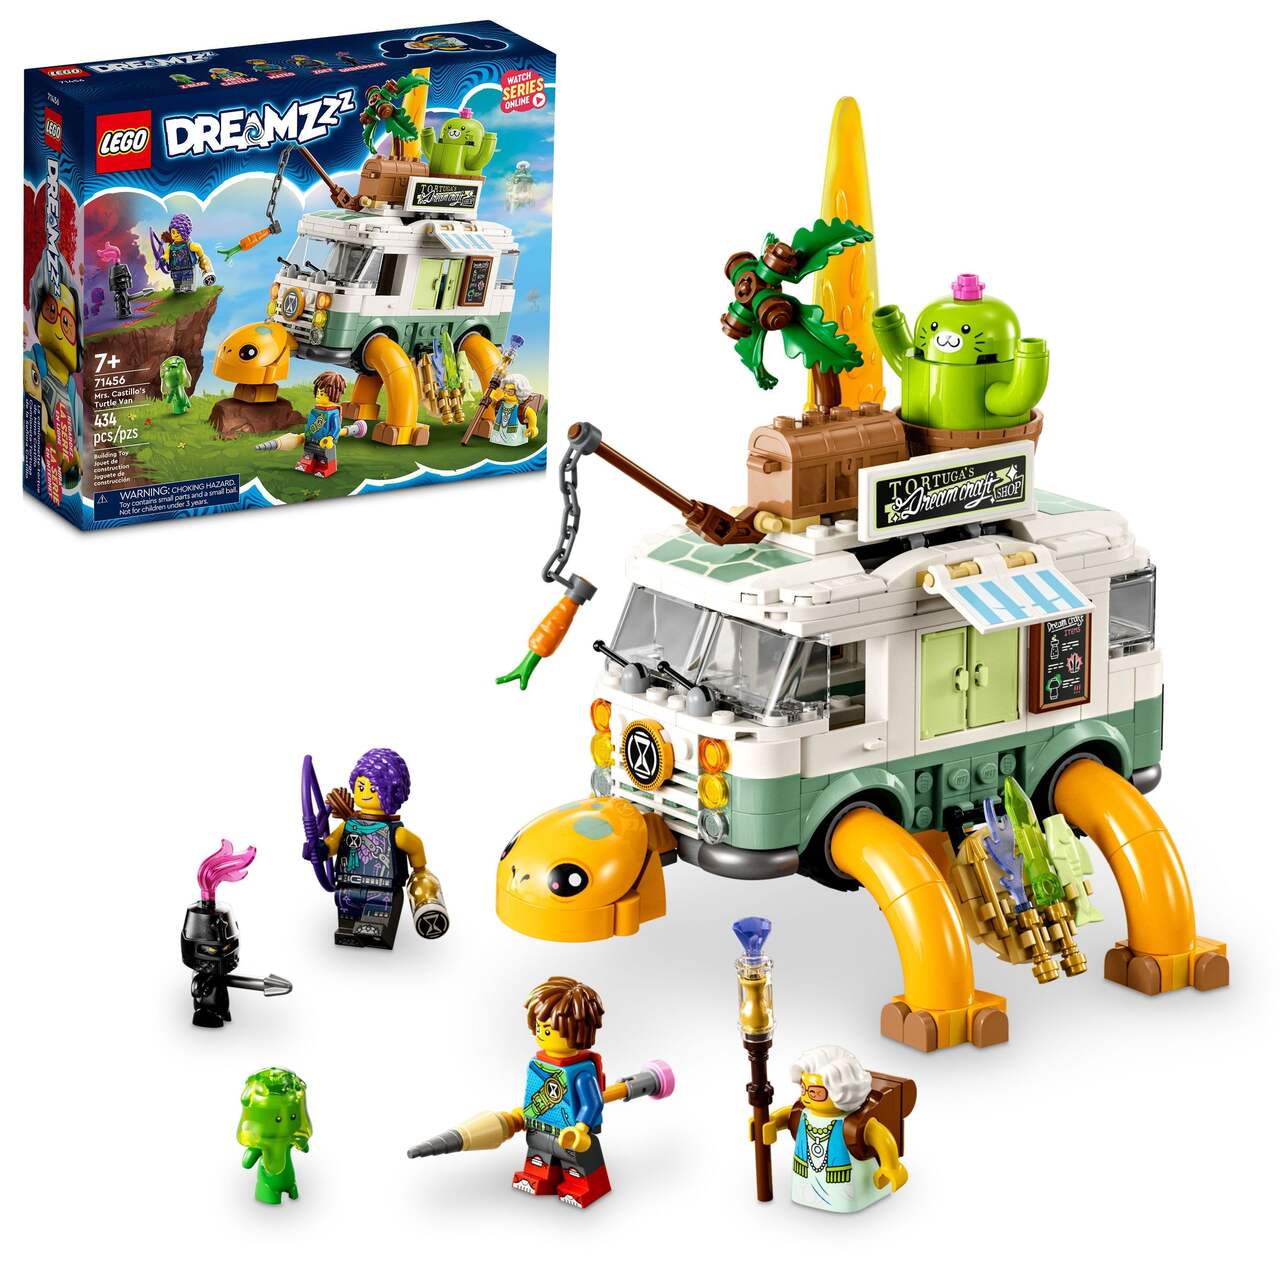 LEGO IDEAS - General Contractor's Work Van